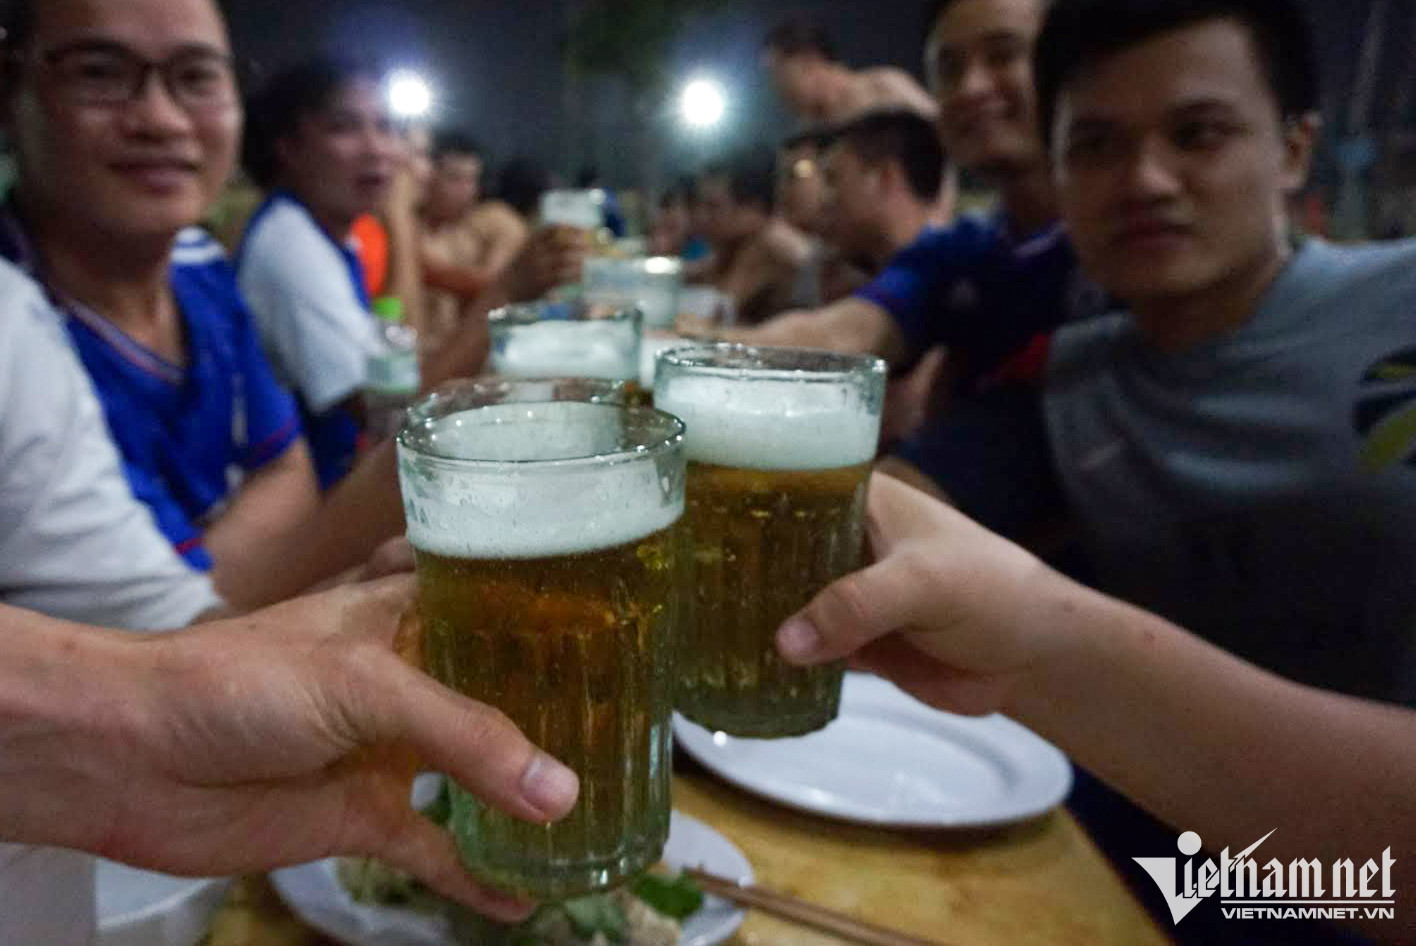 Đặc sản bia hơi Hà Nội không chỉ là loại bia quen thuộc, mà còn mang lại tinh hoa văn hóa ẩm thực của Việt Nam. Với hương vị đặc trưng và phong cách truyền thống, bia hơi Hà Nội chắc chắn sẽ khiến bạn phải say mê. Hãy xem hình ảnh về đặc sản bia hơi để cảm nhận được sự khác biệt của nó.